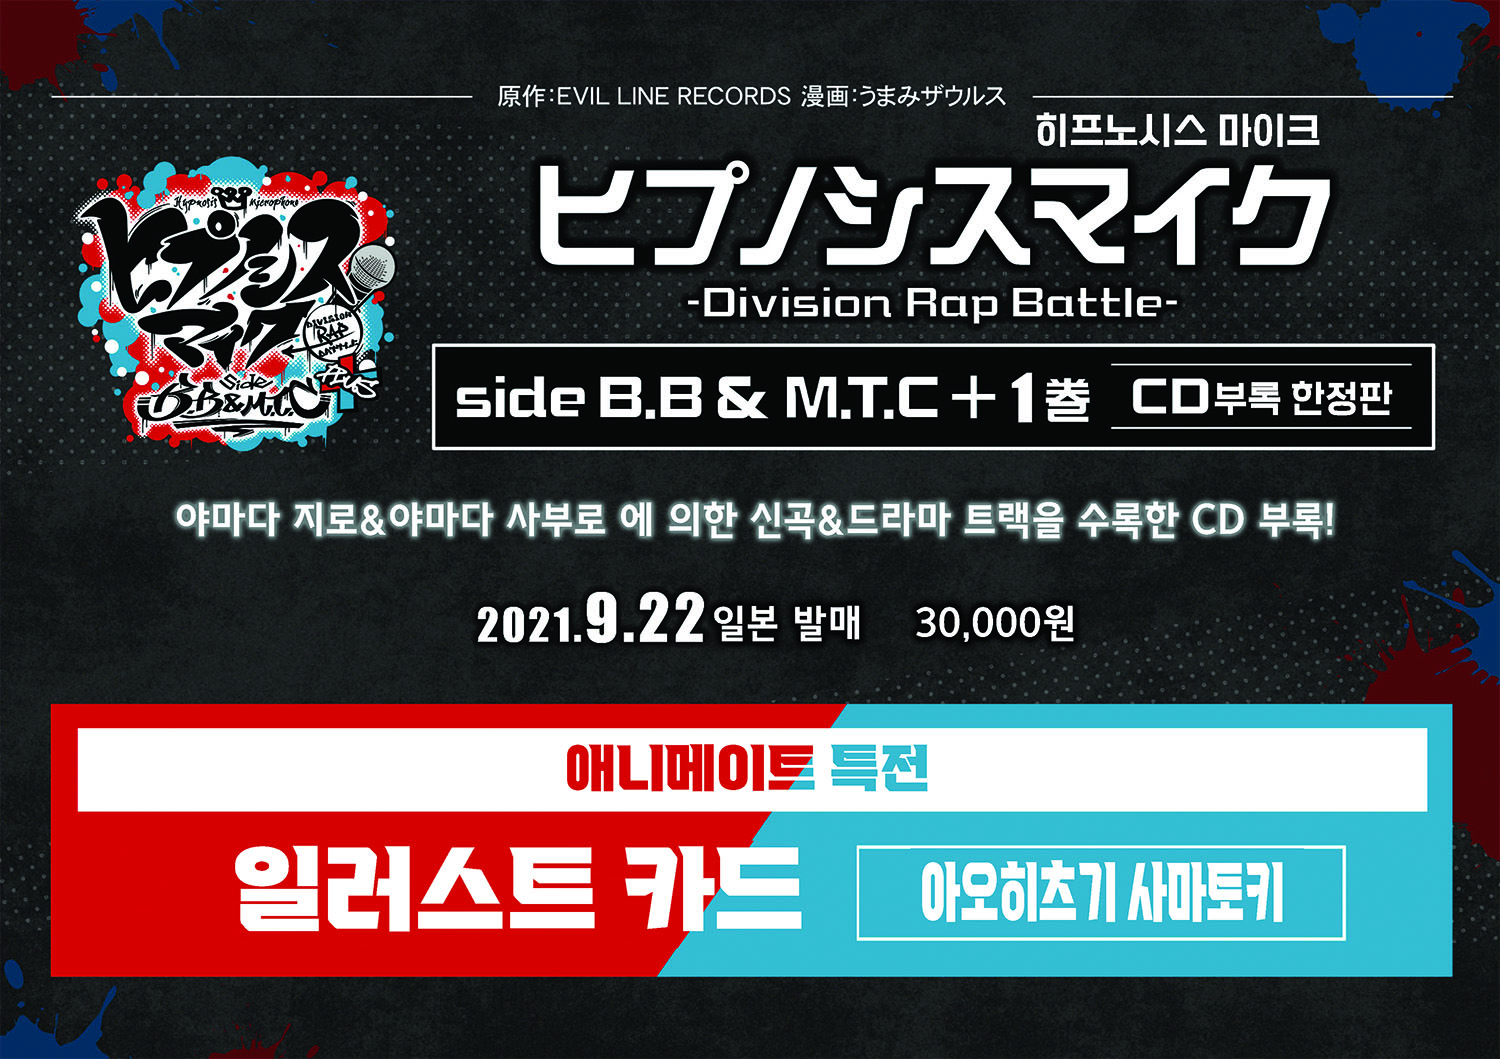 【コミックス】 ヒプノシスマイク -Division Rap Battle- side B.B & M.T.C+ 01 CD付き限定版